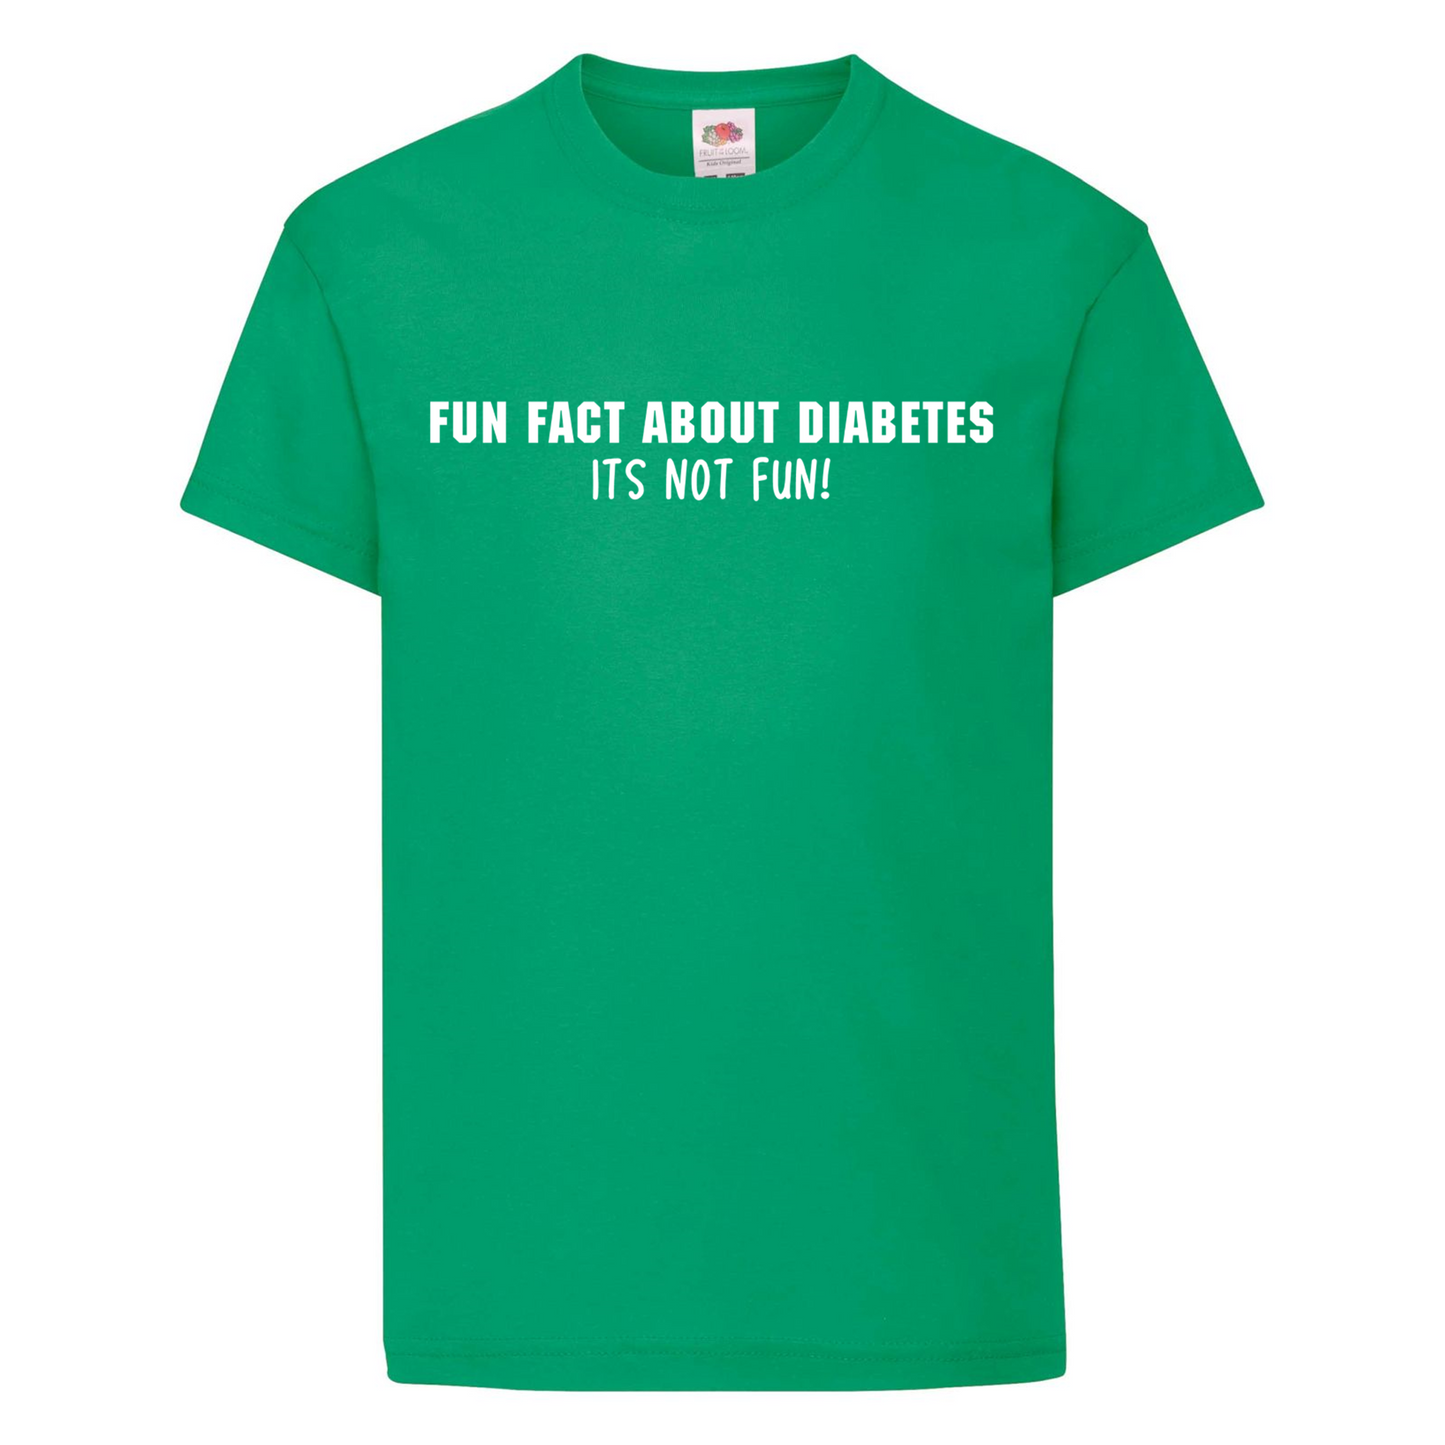 Fun Fact About Diabetes, Its Not Fun Kids T Shirt